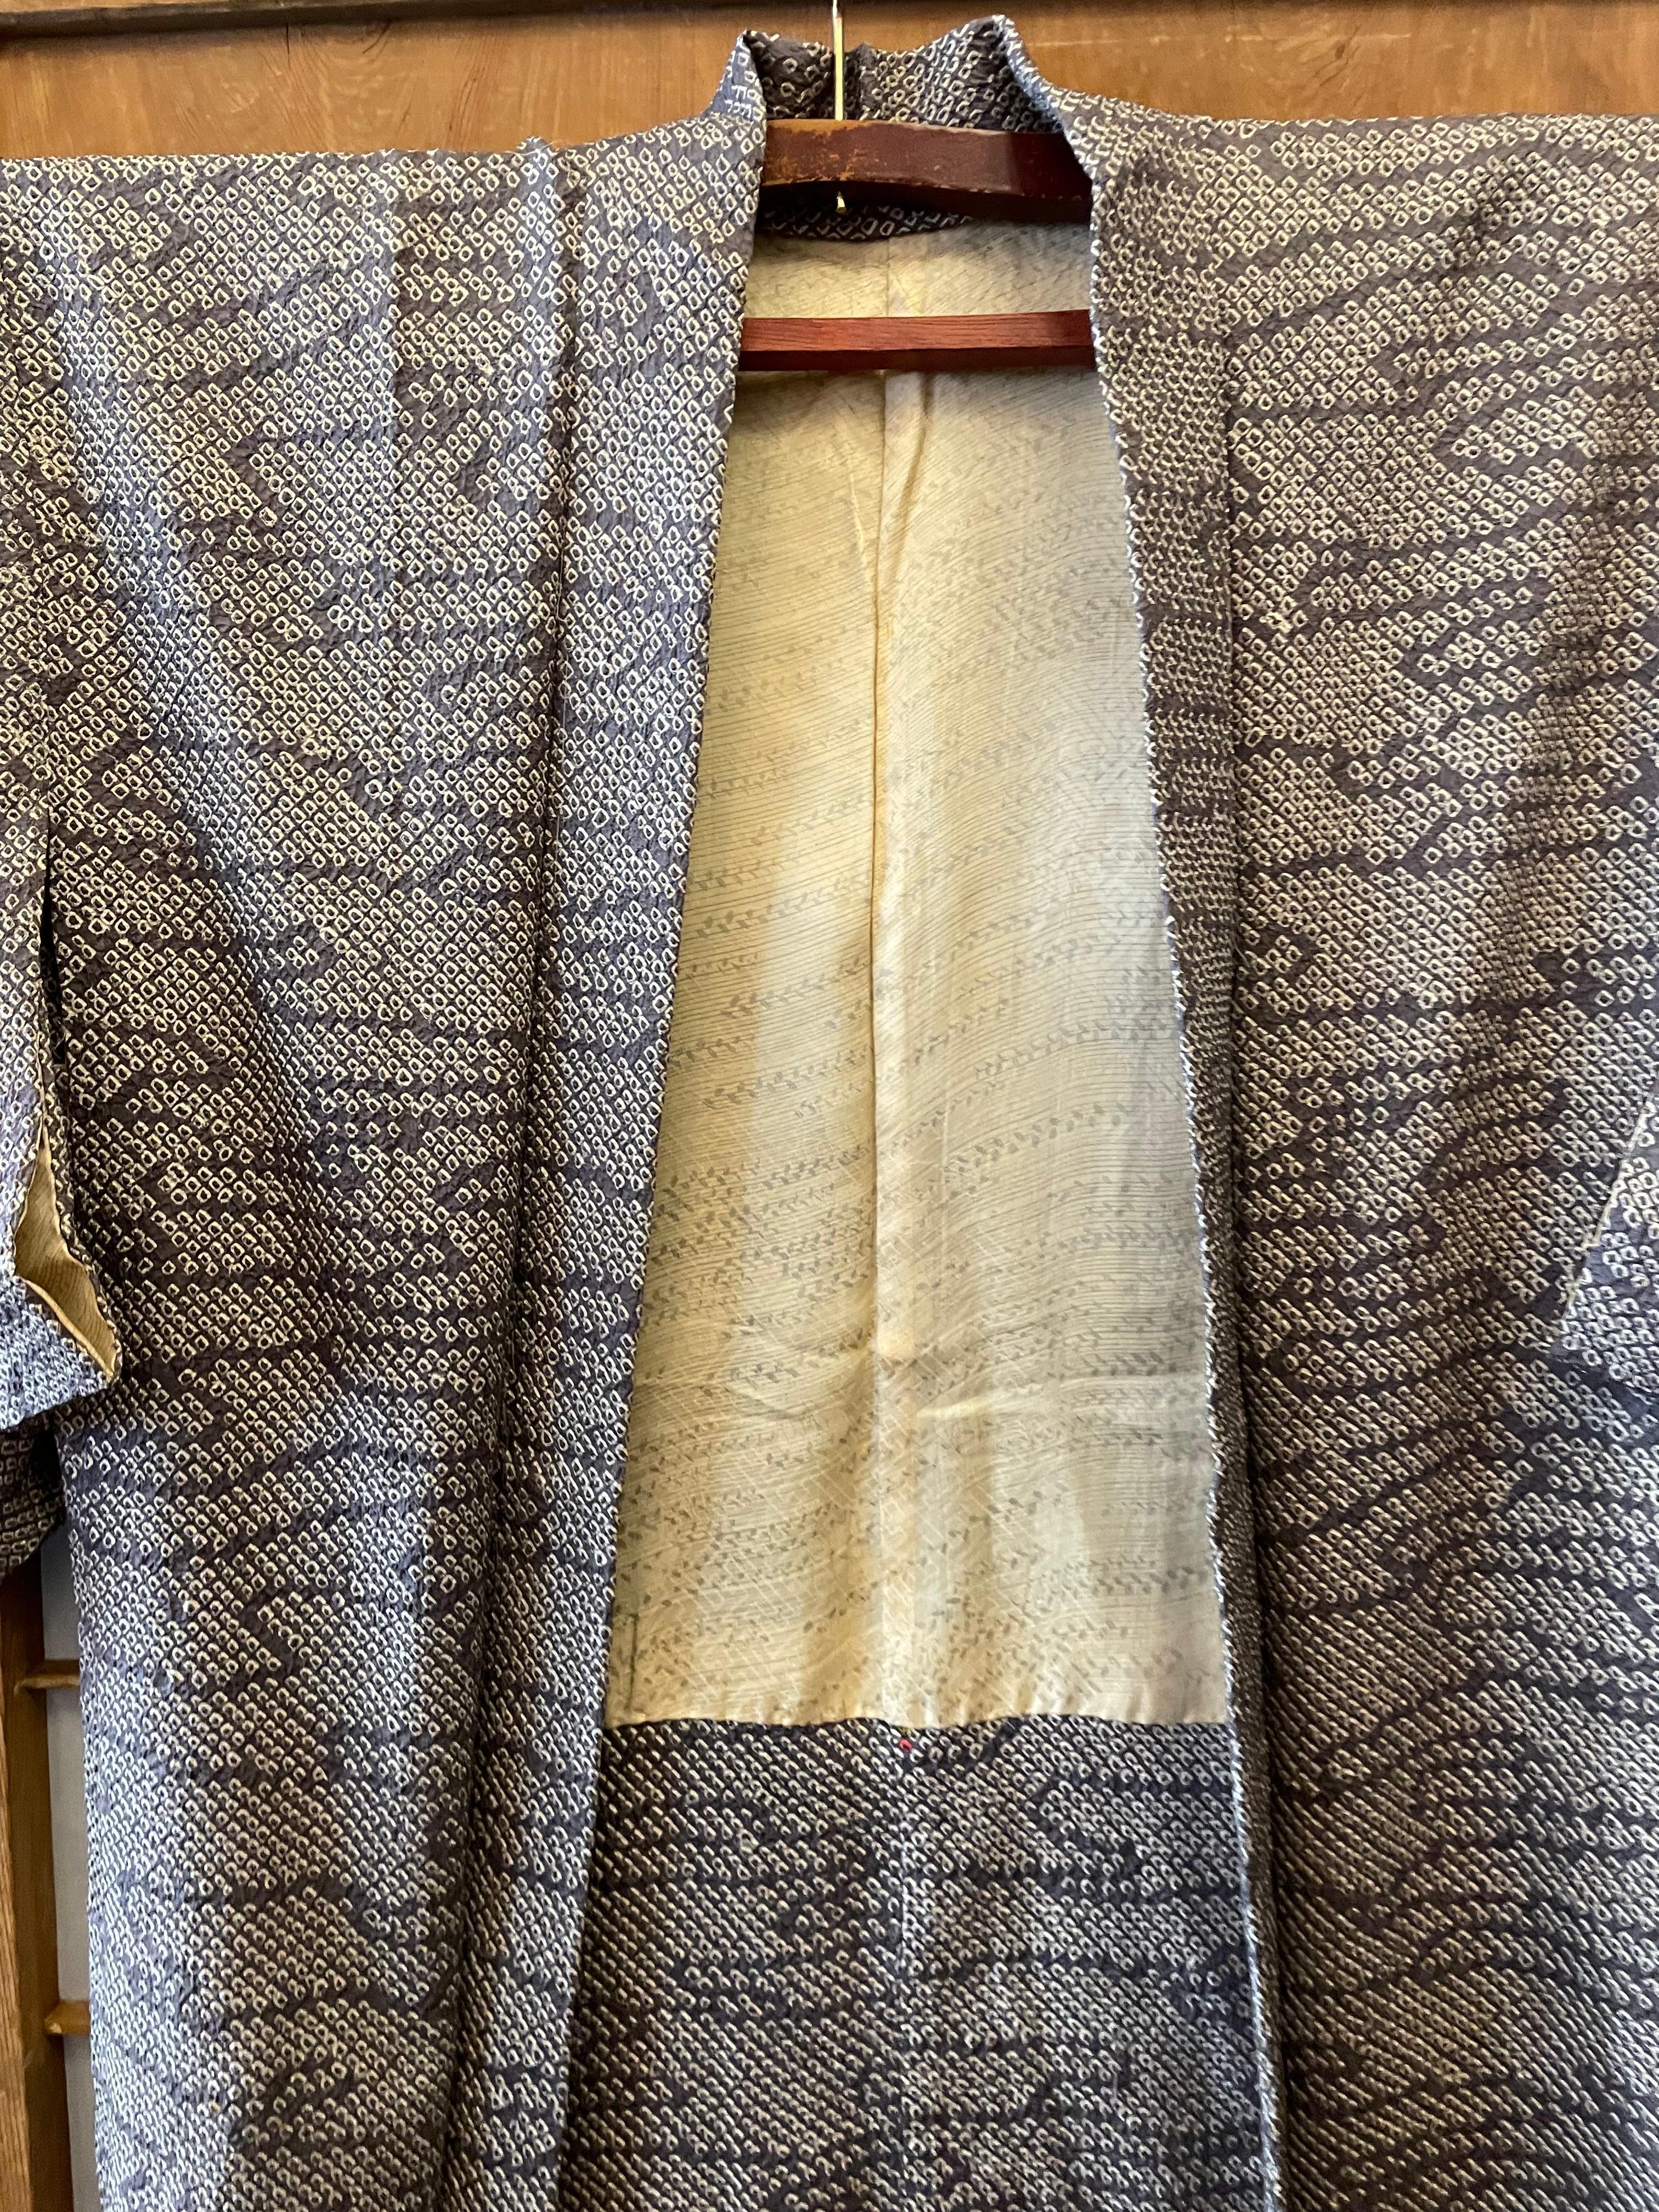 Dies ist eine Seidenjacke, die in Japan hergestellt wurde. Diese Art von Jacke wird auf Japanisch 'Haori' genannt.
Es wurde in der Showa-Ära in den 1970er Jahren hergestellt. Diese Jacke ist in Shibori-Technik gefertigt.

Shibori ist eine